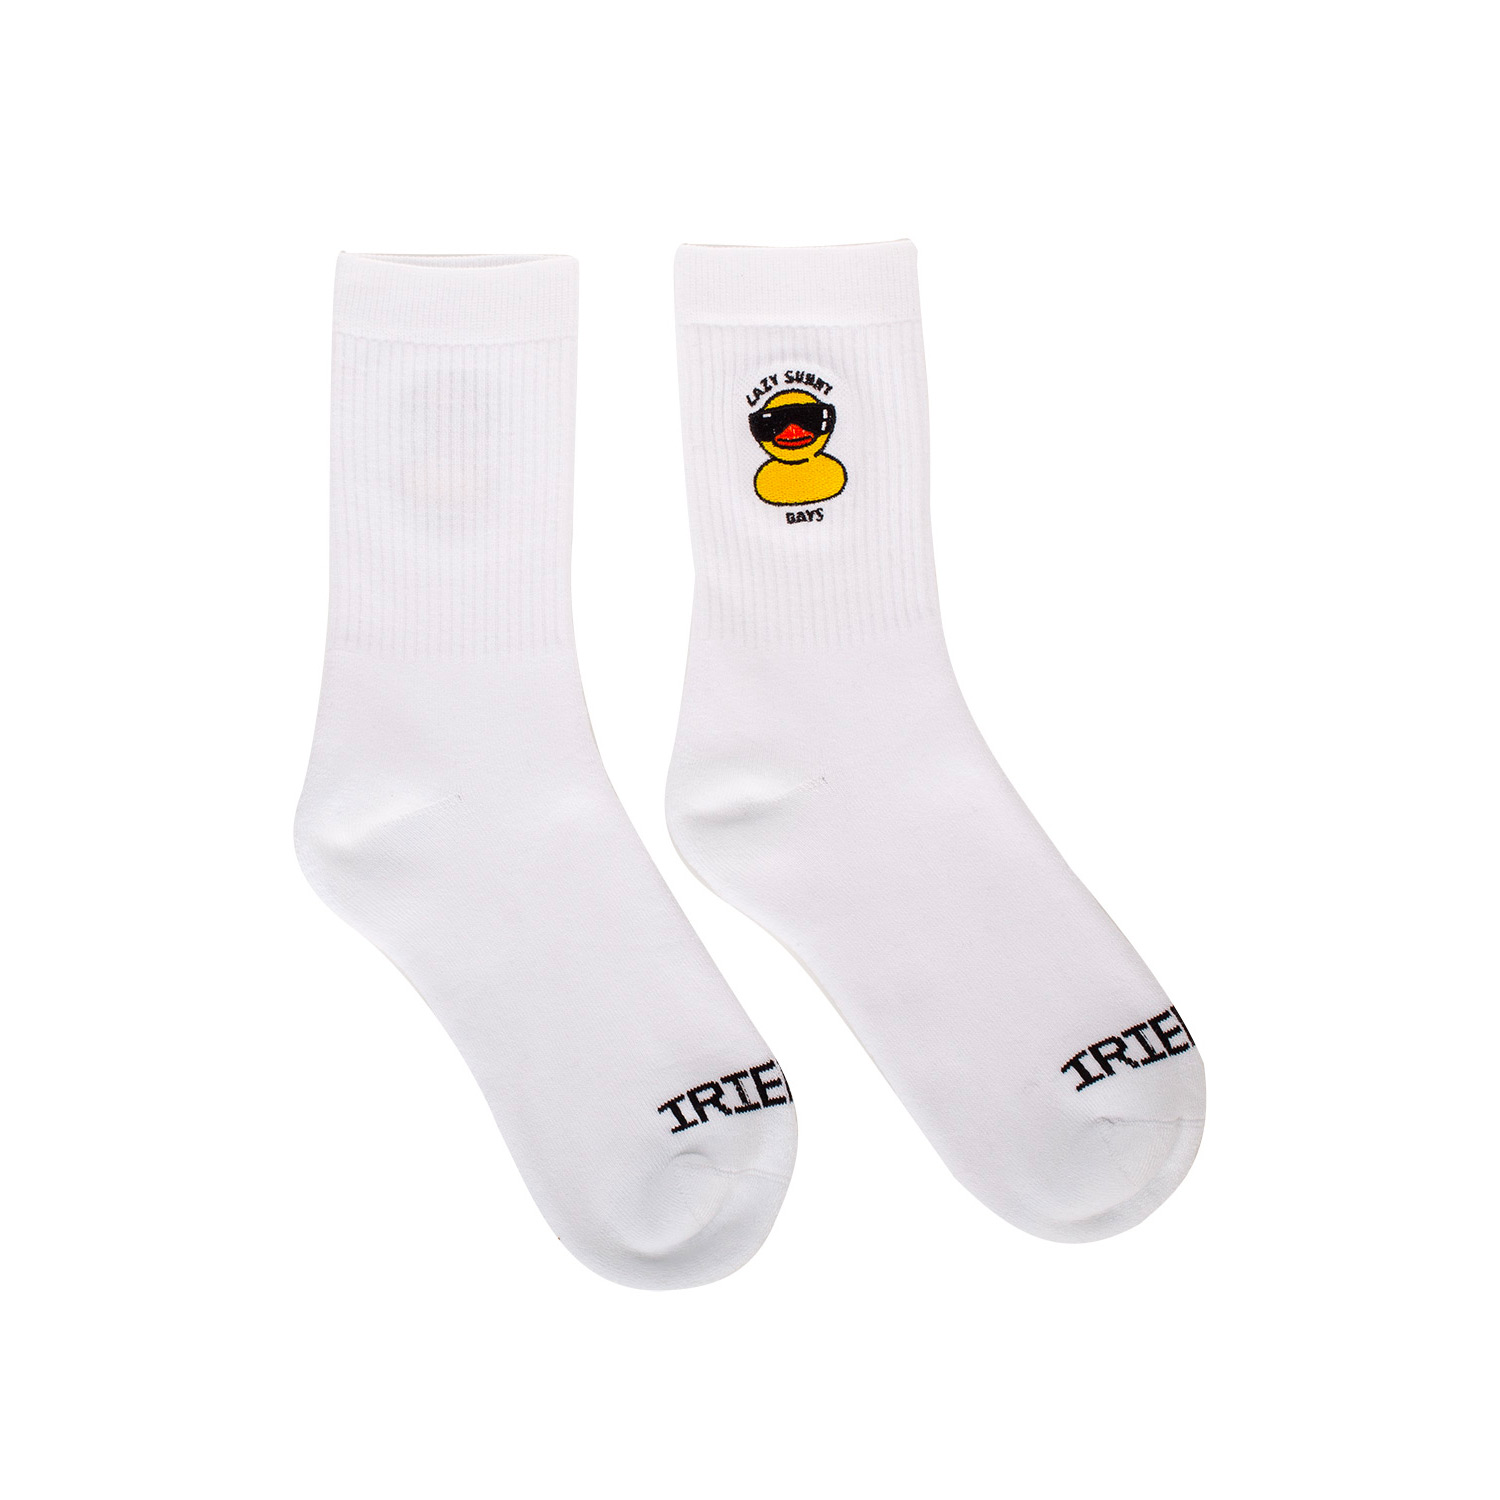 Größe Socken: S/M (39-42)